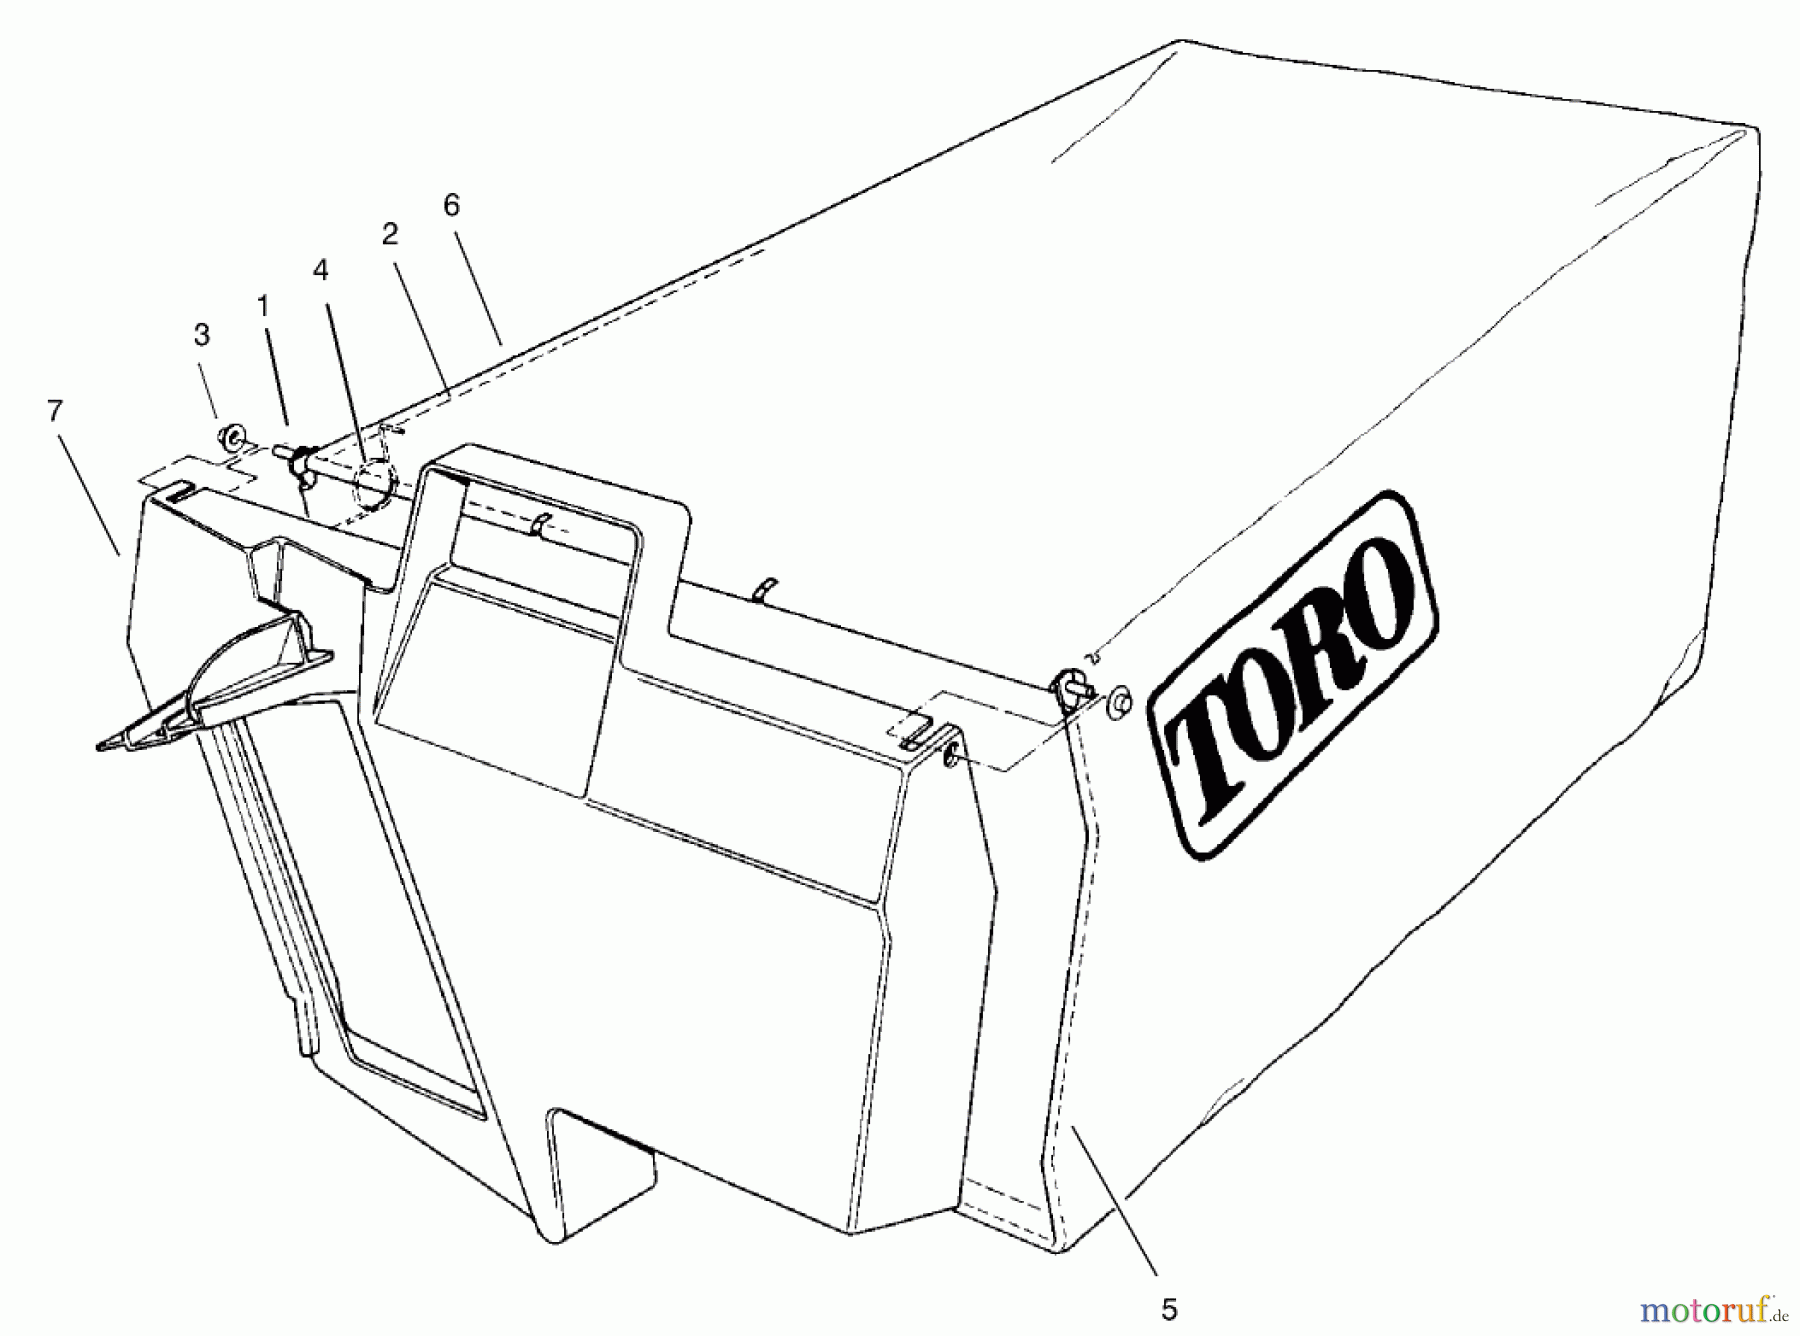  Toro Neu Mowers, Walk-Behind Seite 2 22167 - Toro 21